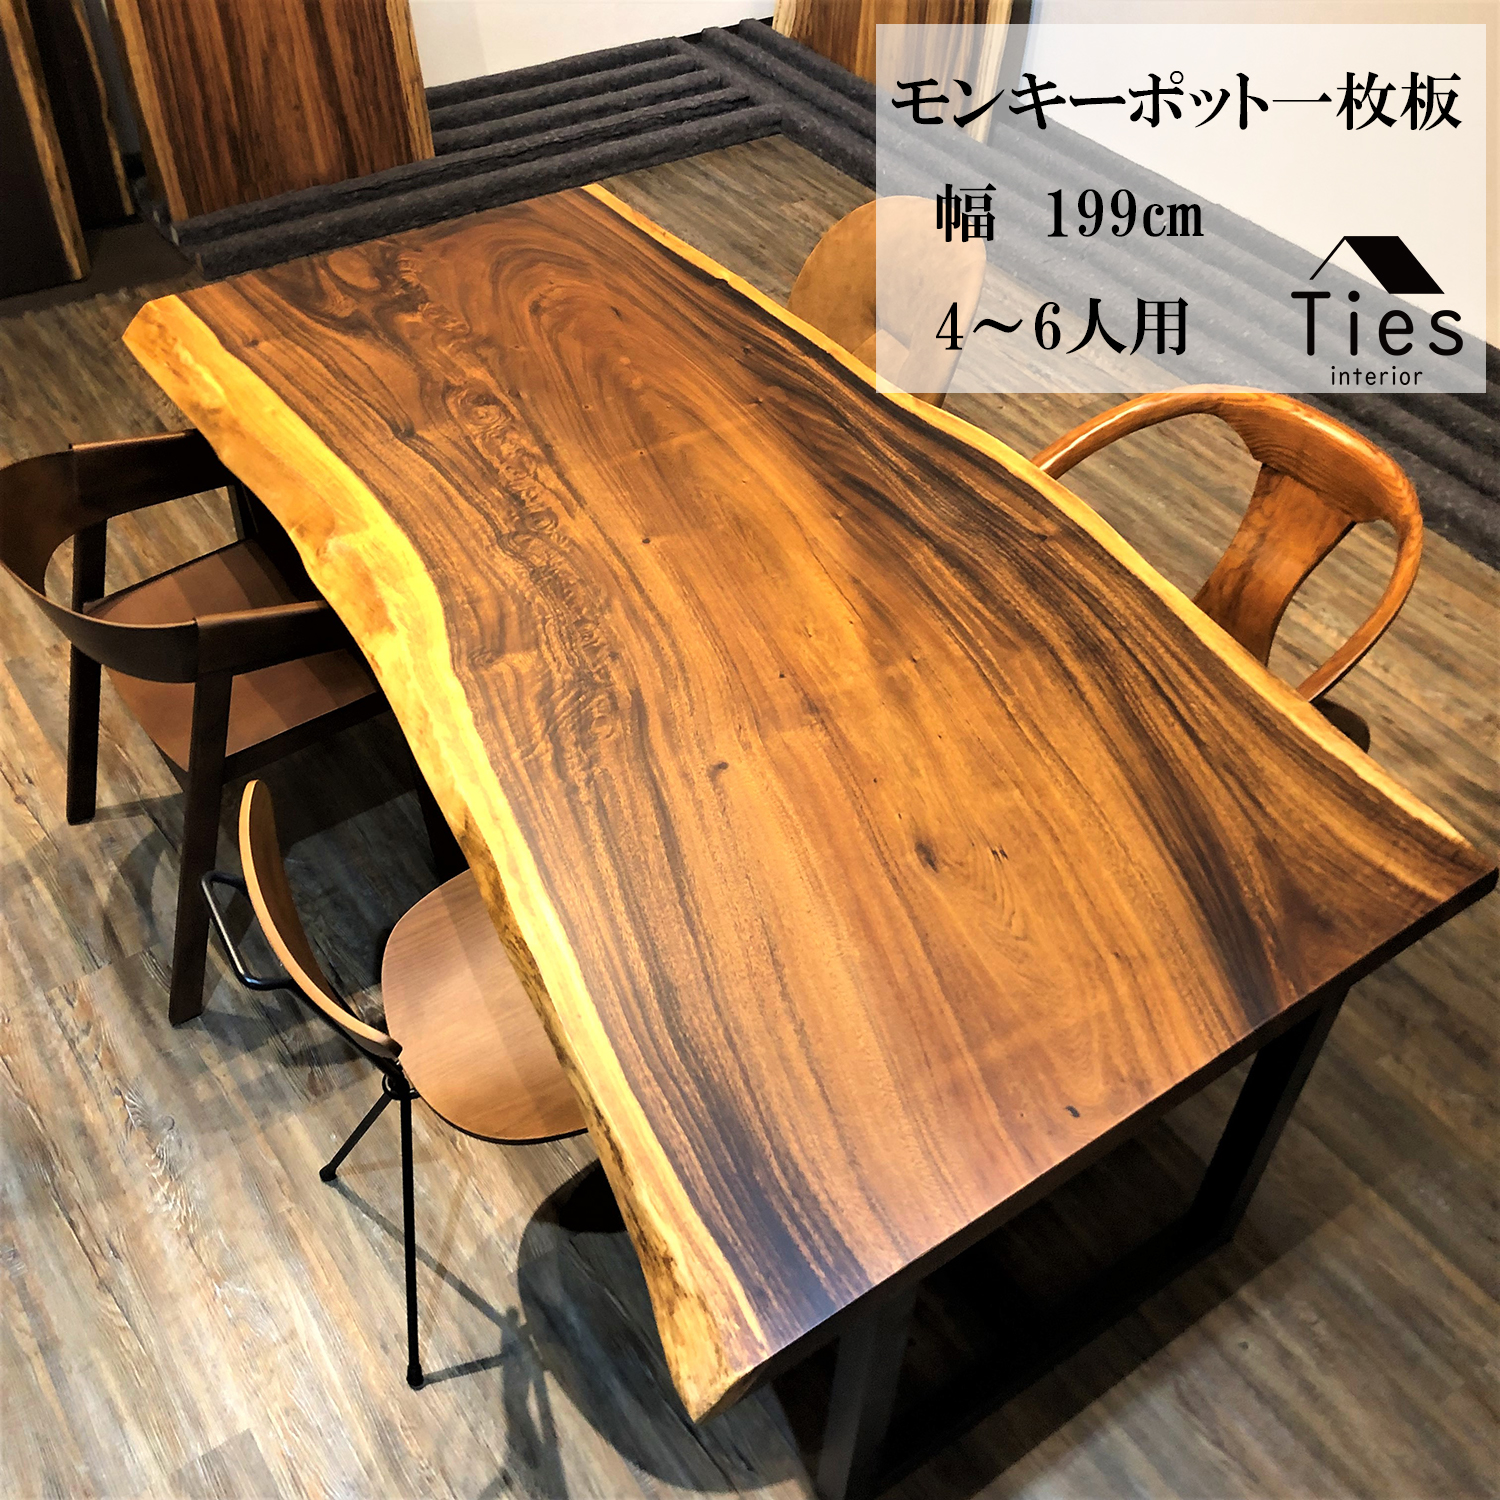 【楽天市場】27,800円OFF 一枚板 テーブル ダイニングテーブル 